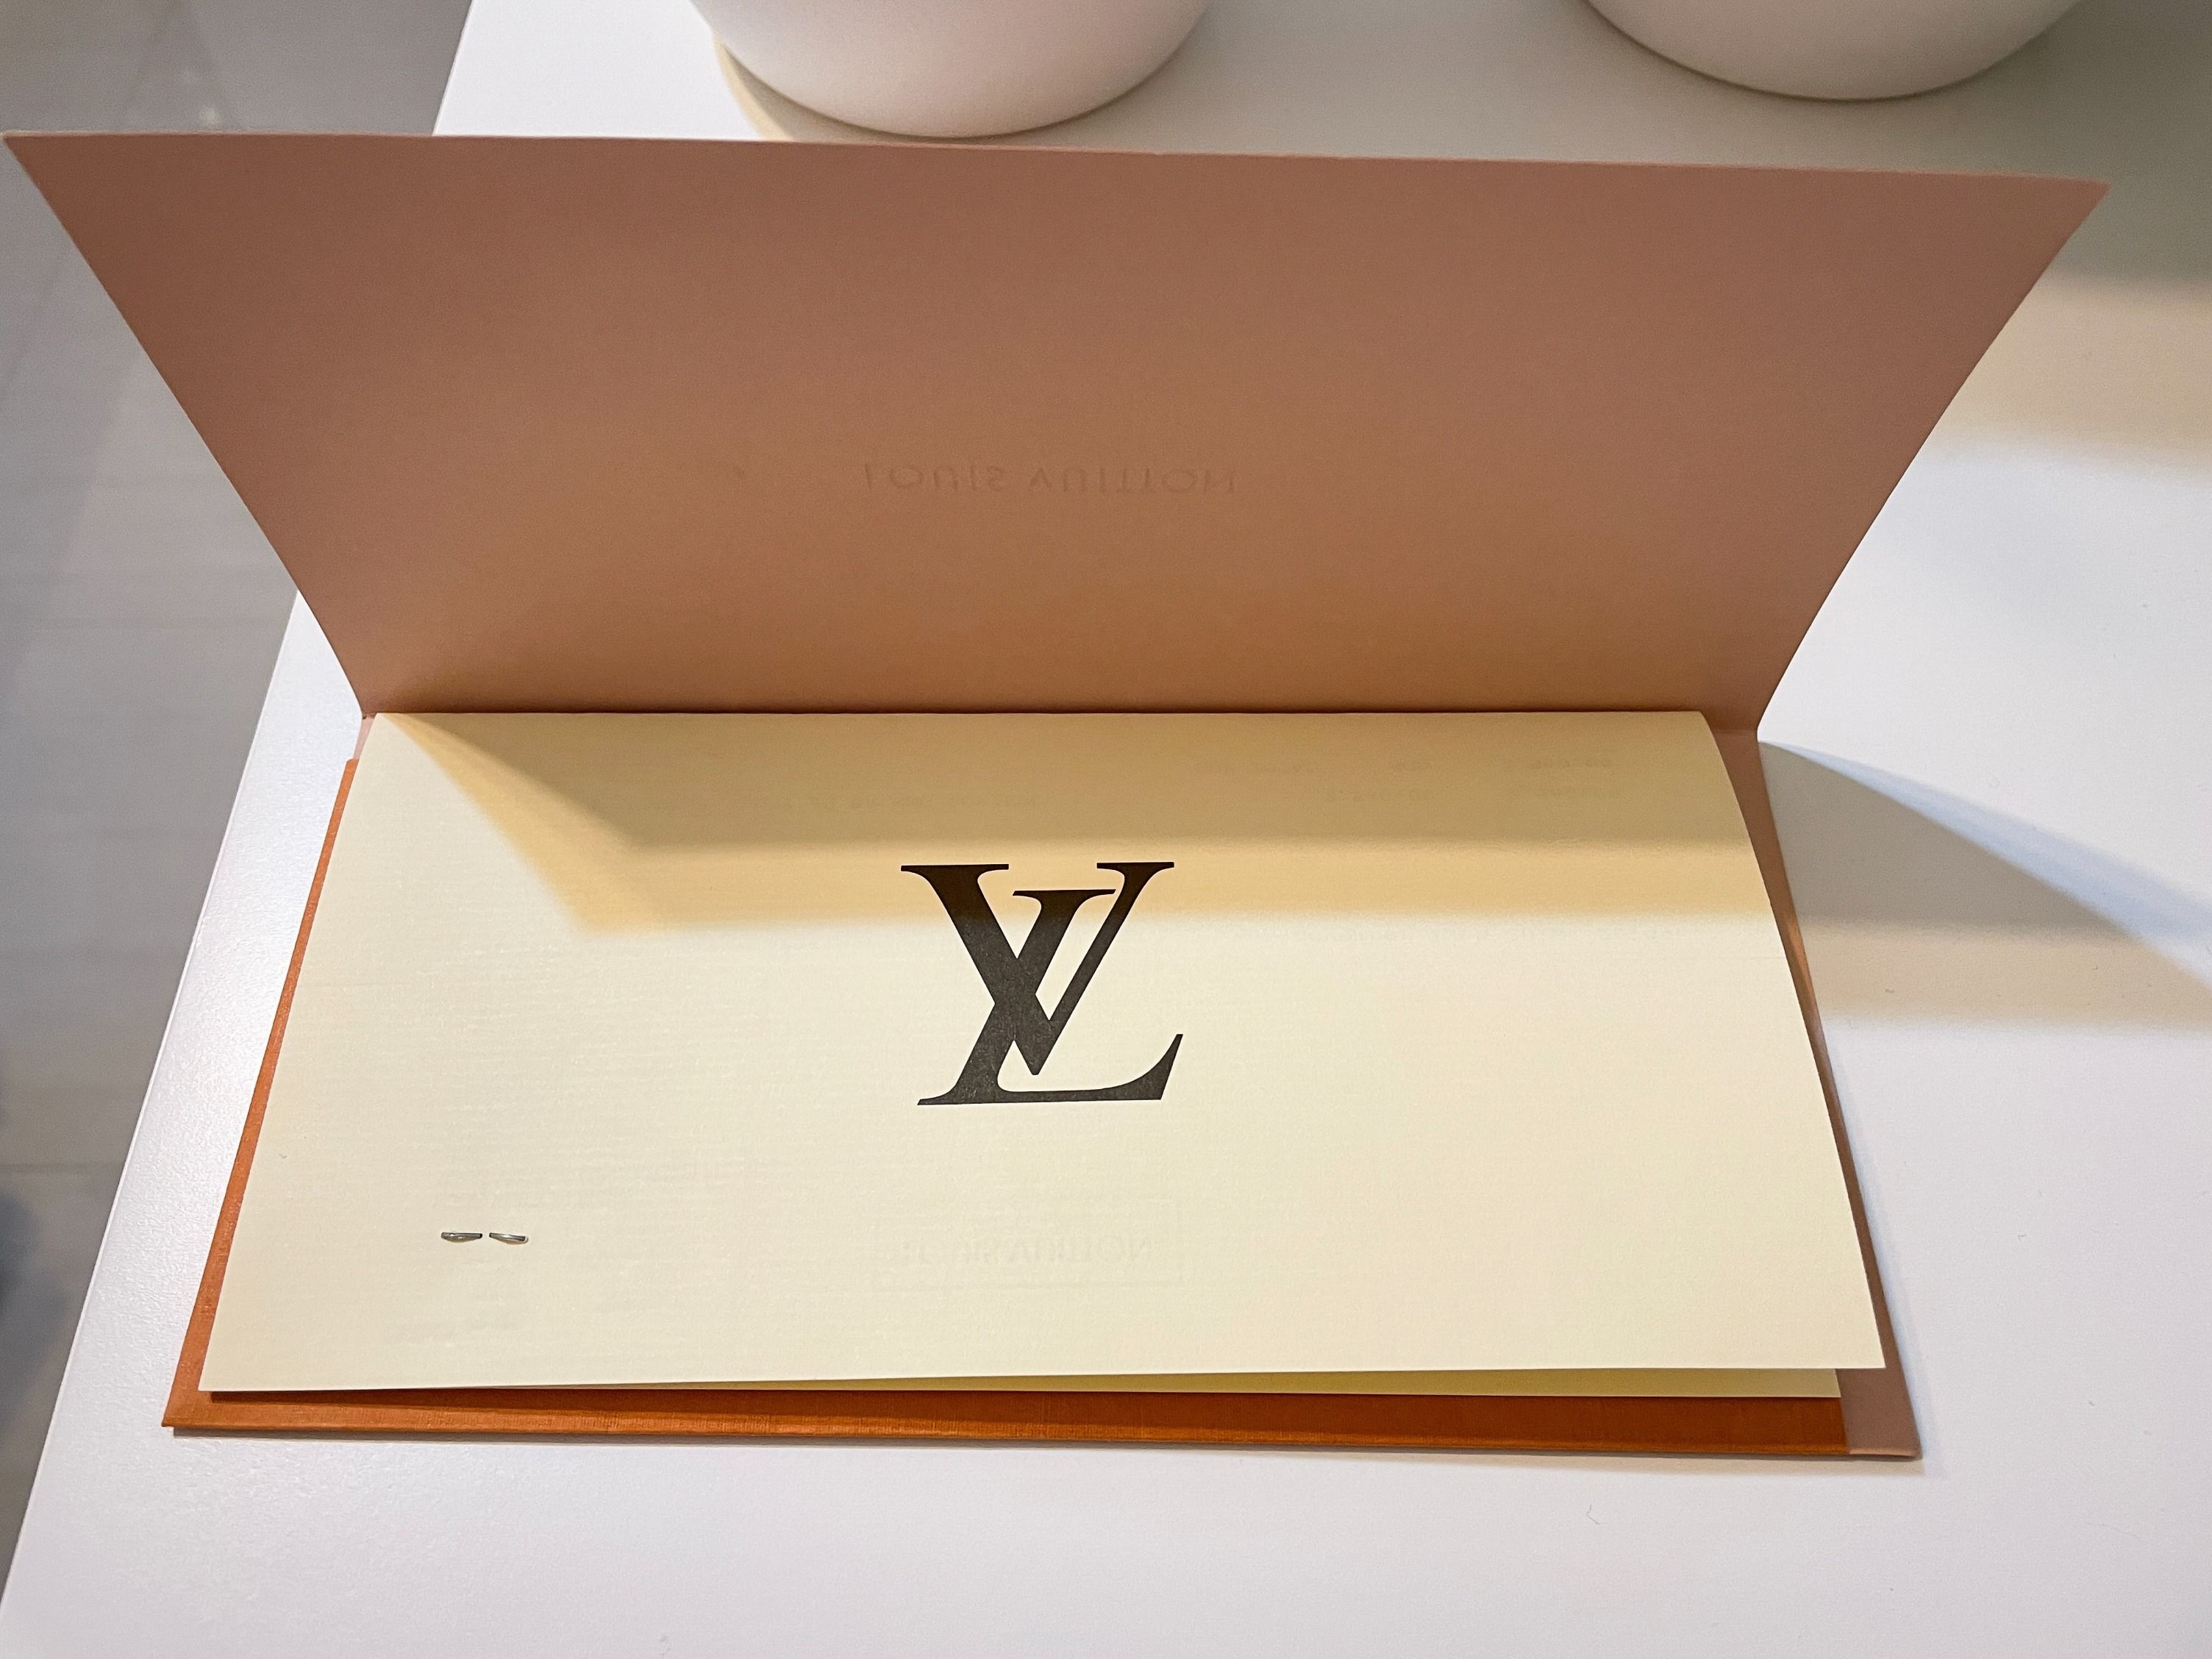 Shop Louis Vuitton Cluny Bb (M42738) by LesAiles